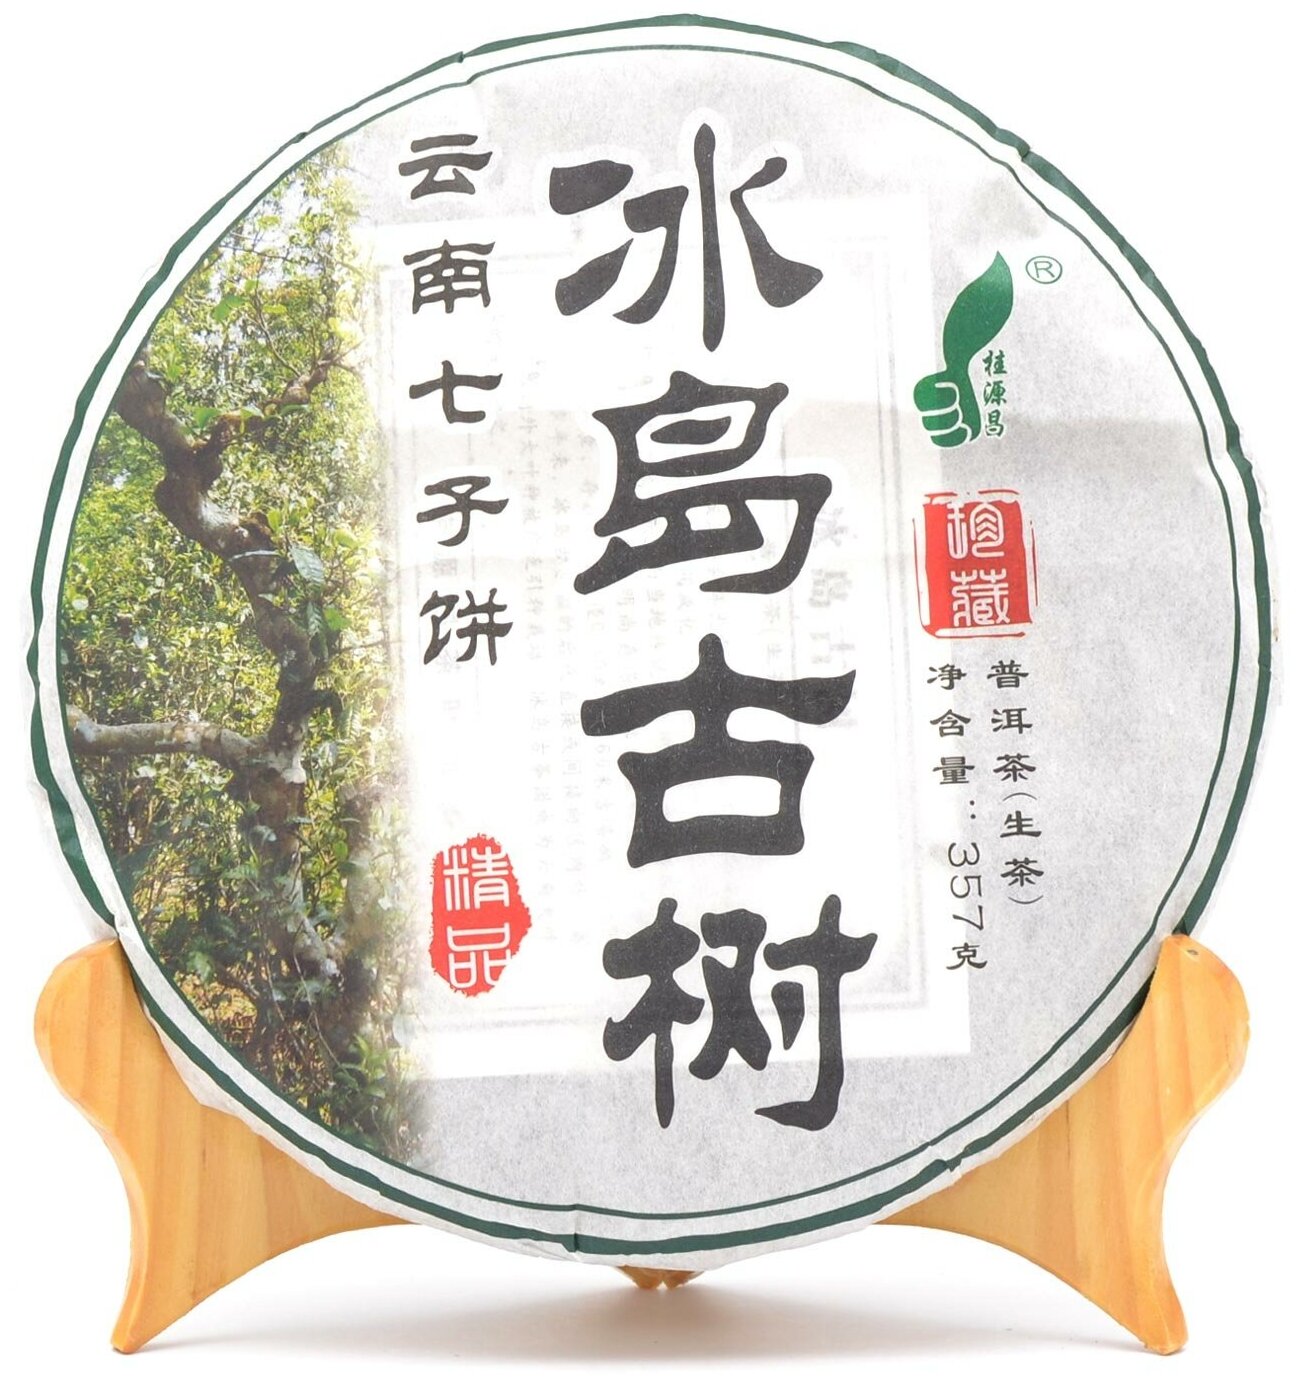 Чай Шен Пуэр Бин Дао Гу Шу 2019 год блин 357 грамм, китайский прессованный элитный зеленый Пу Эр для похудения и чайной церемонии, лепешка высший сорт